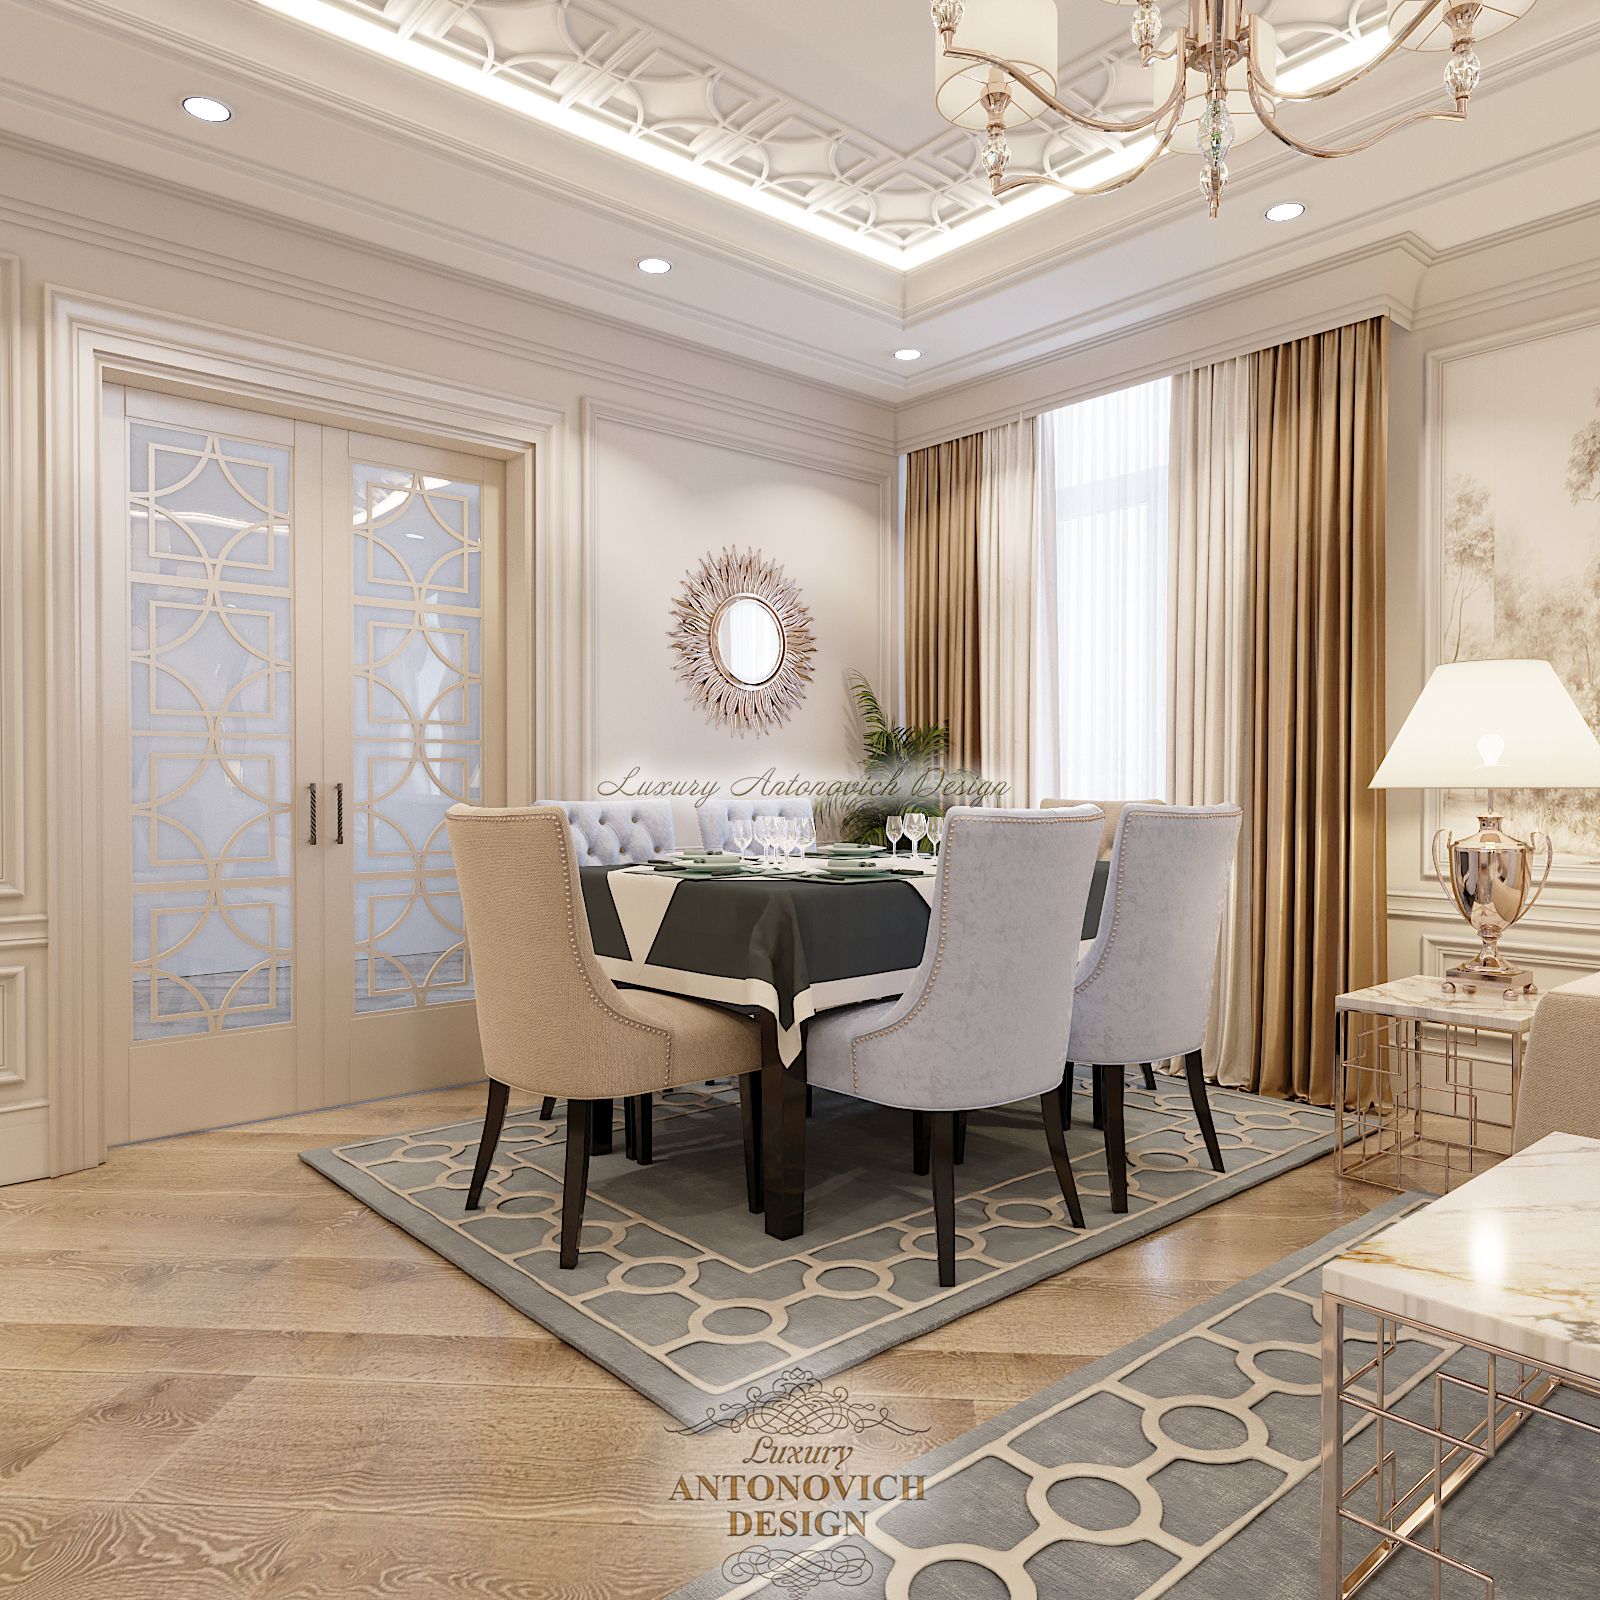 Дизайн интерьера гостиная (4), Luxury Antonovich Design